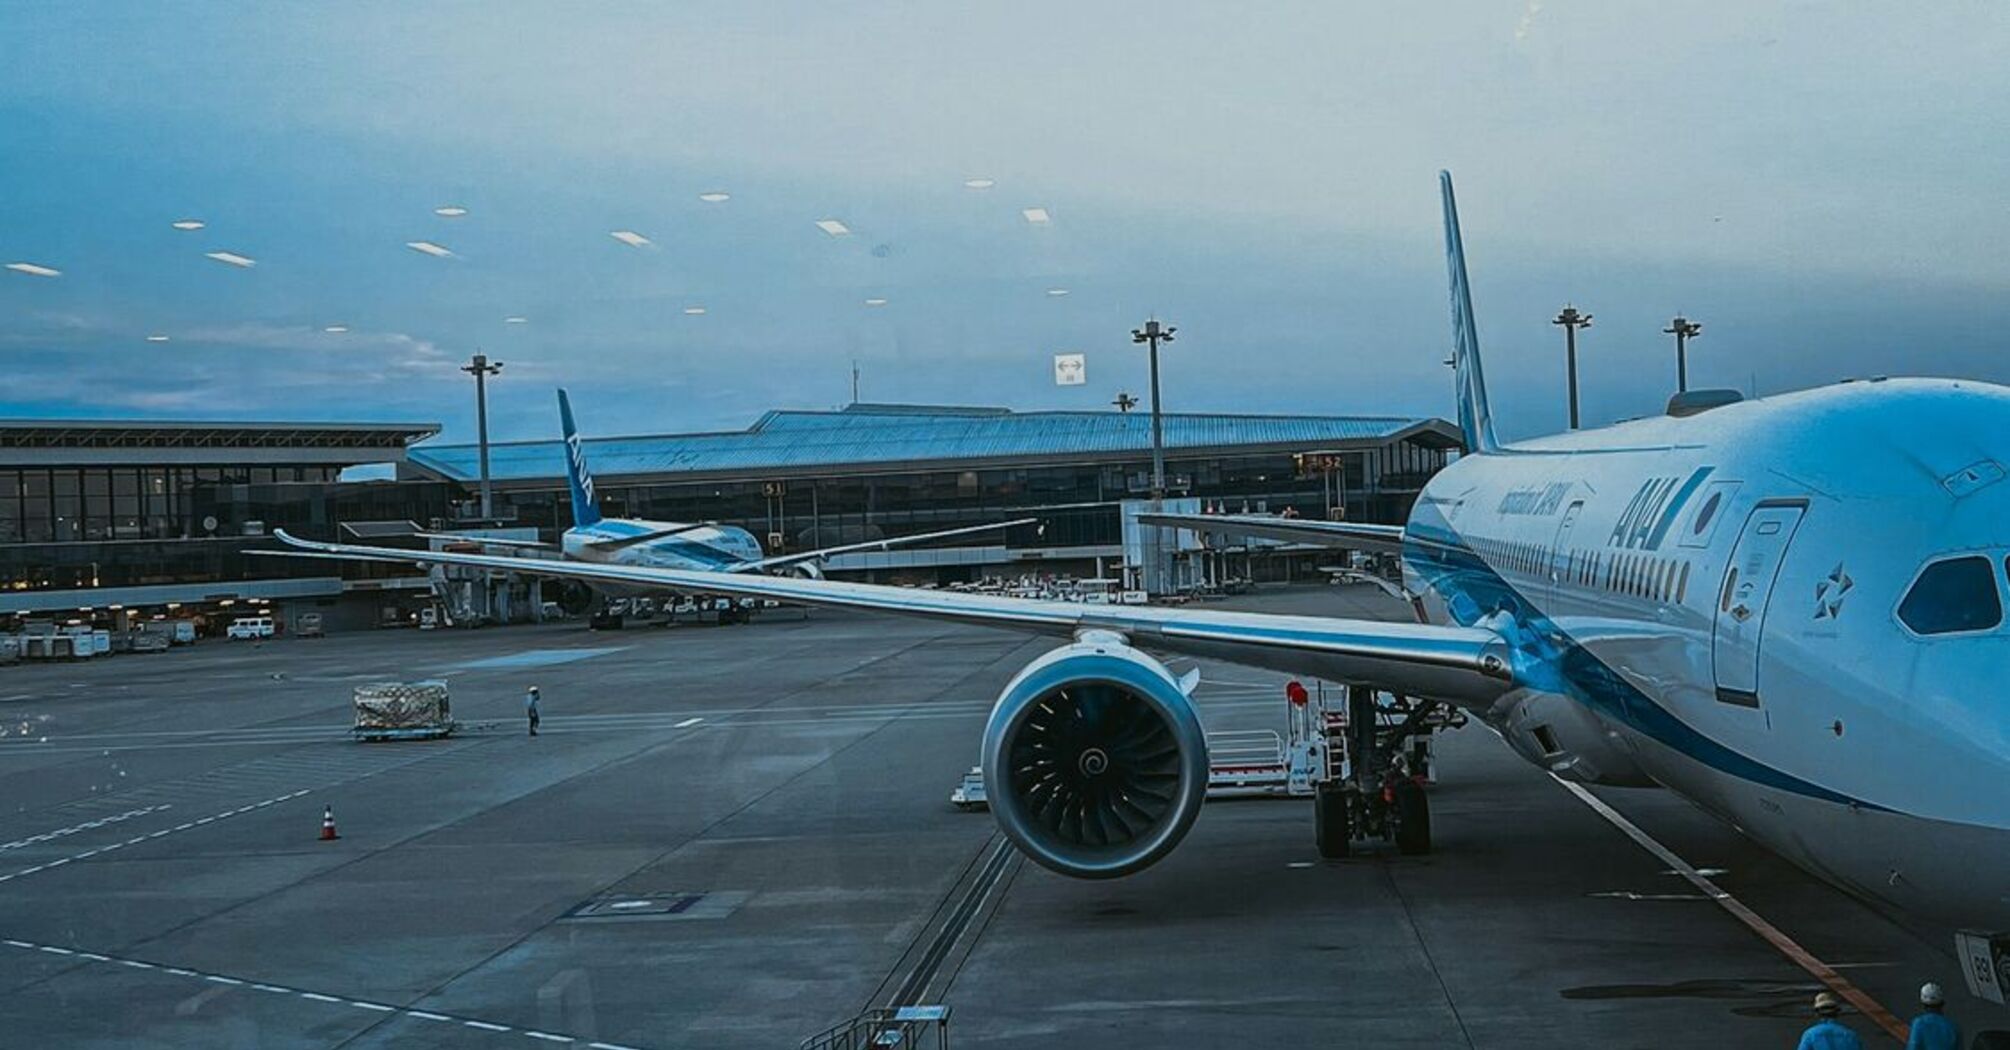 Airplane at Narita Airport preparing for departure